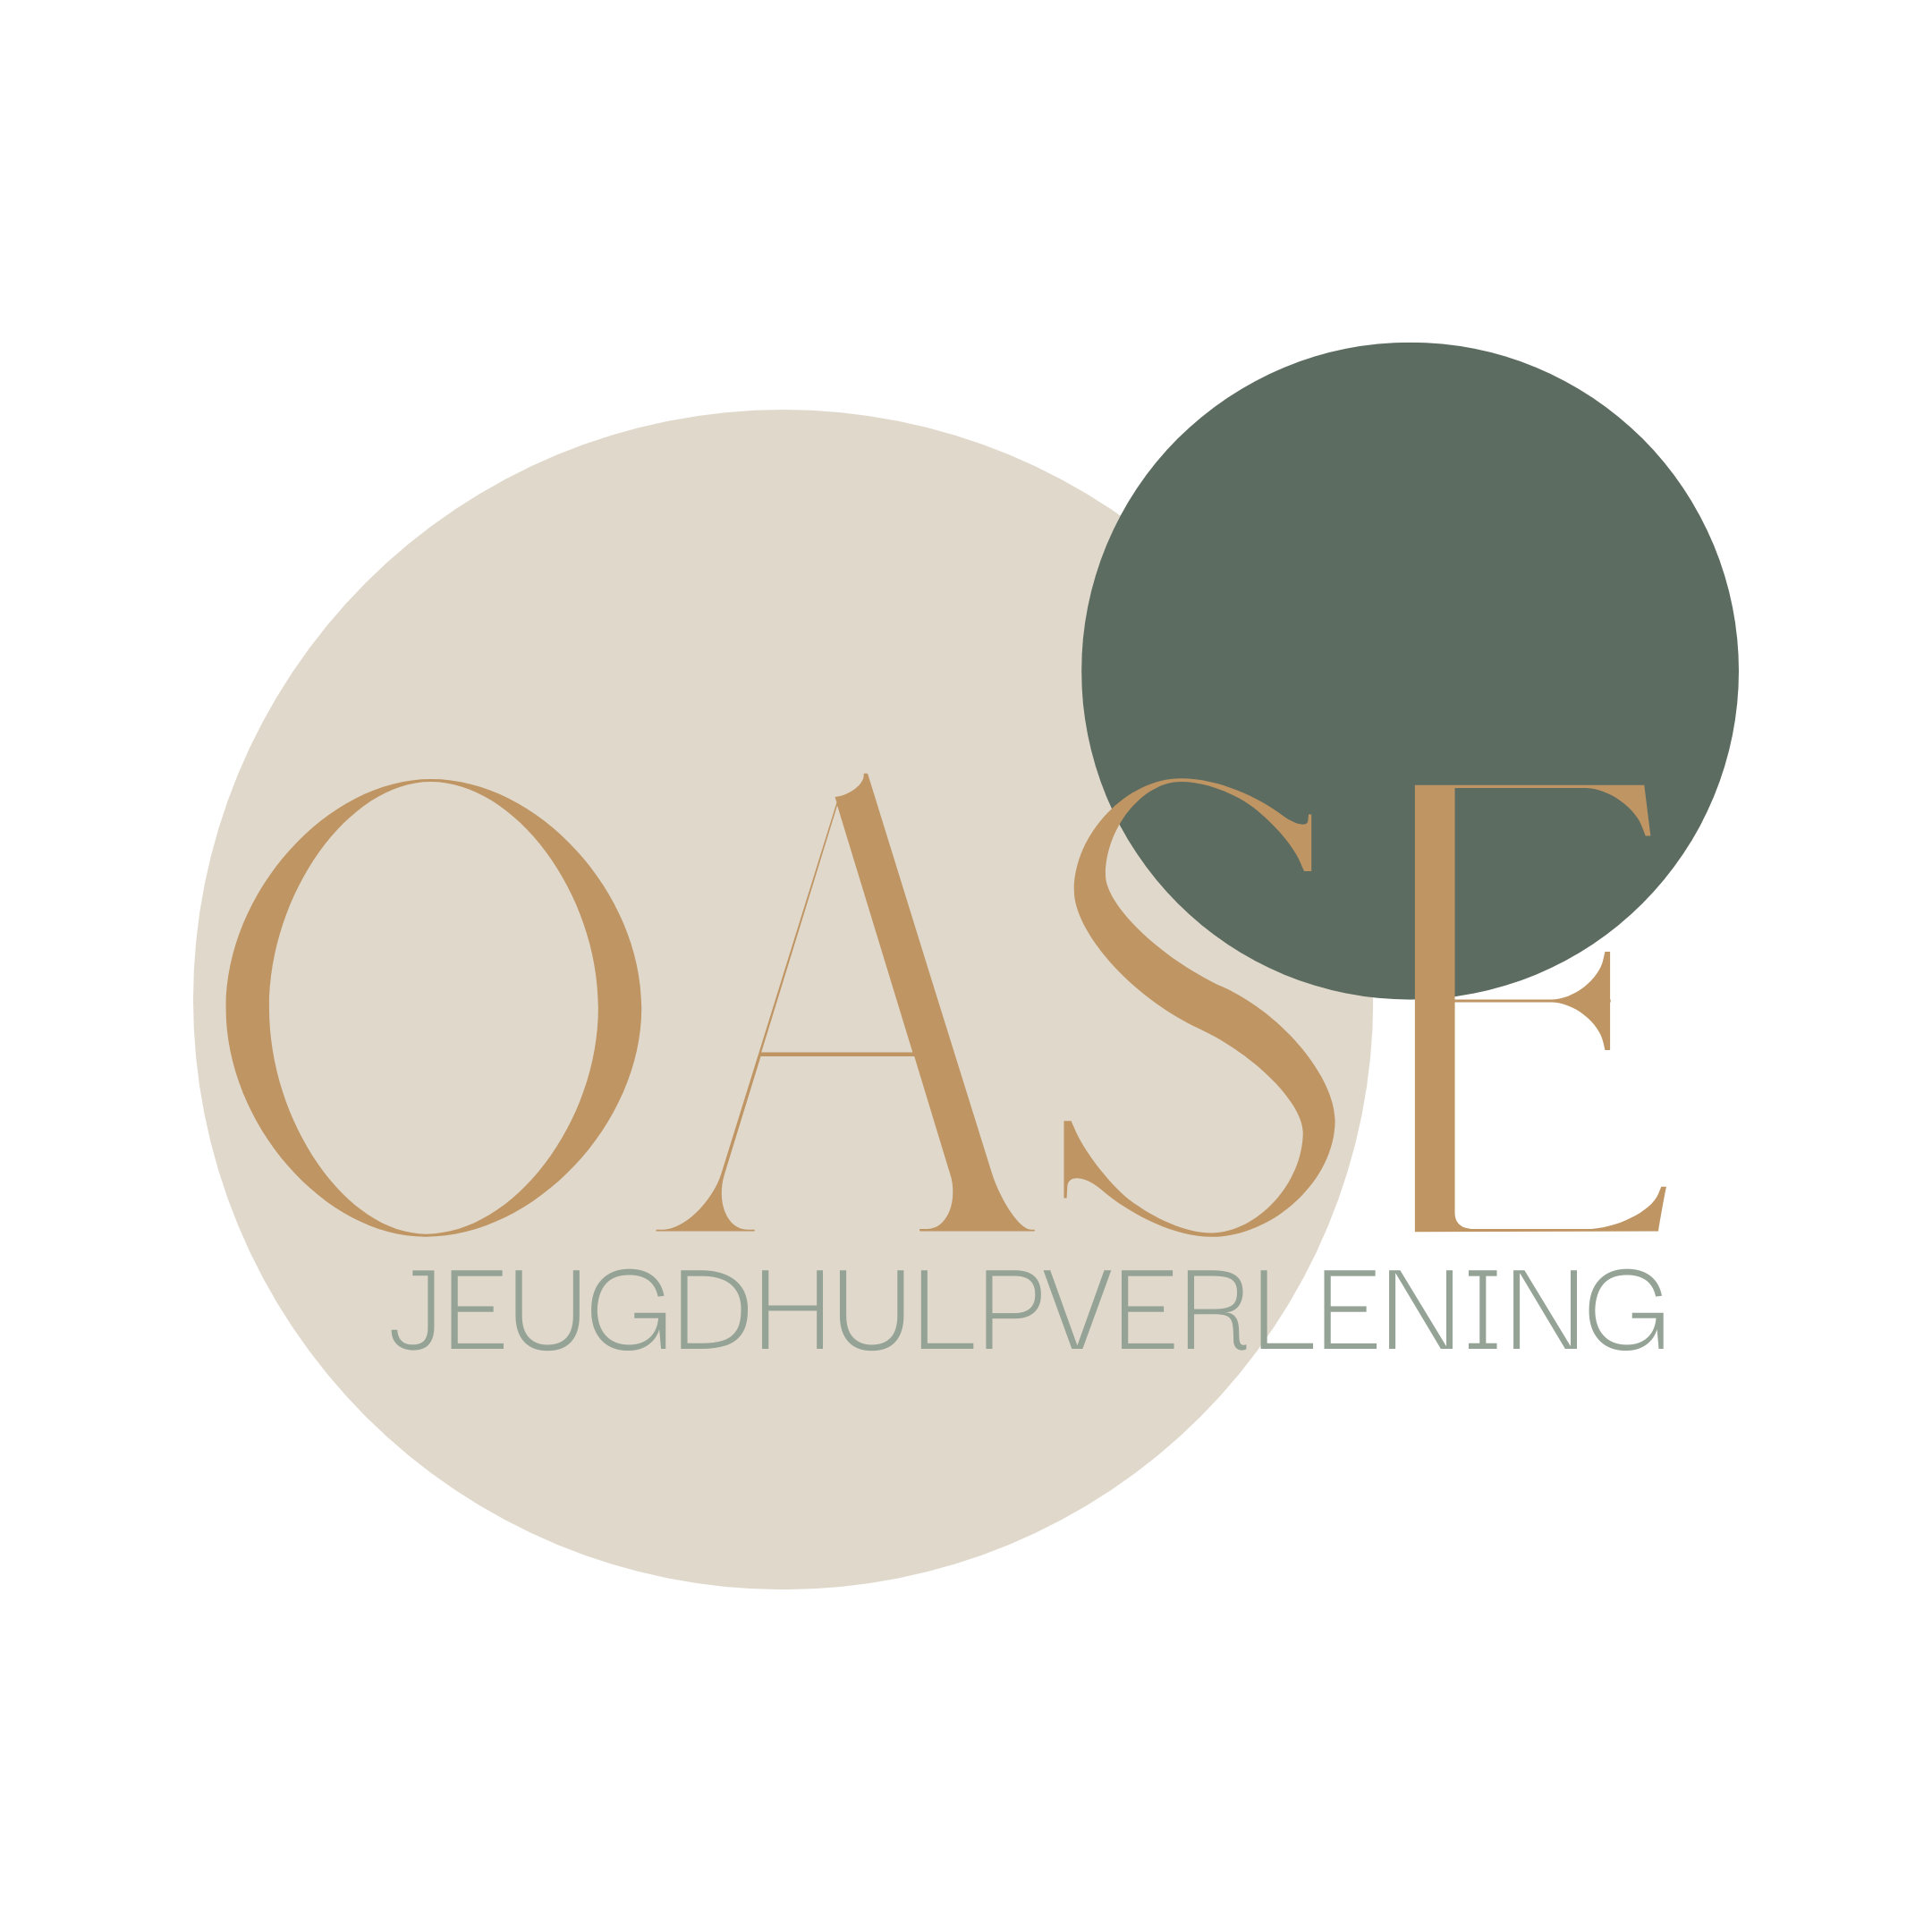 OASE logo compleet - zonder achtergrond